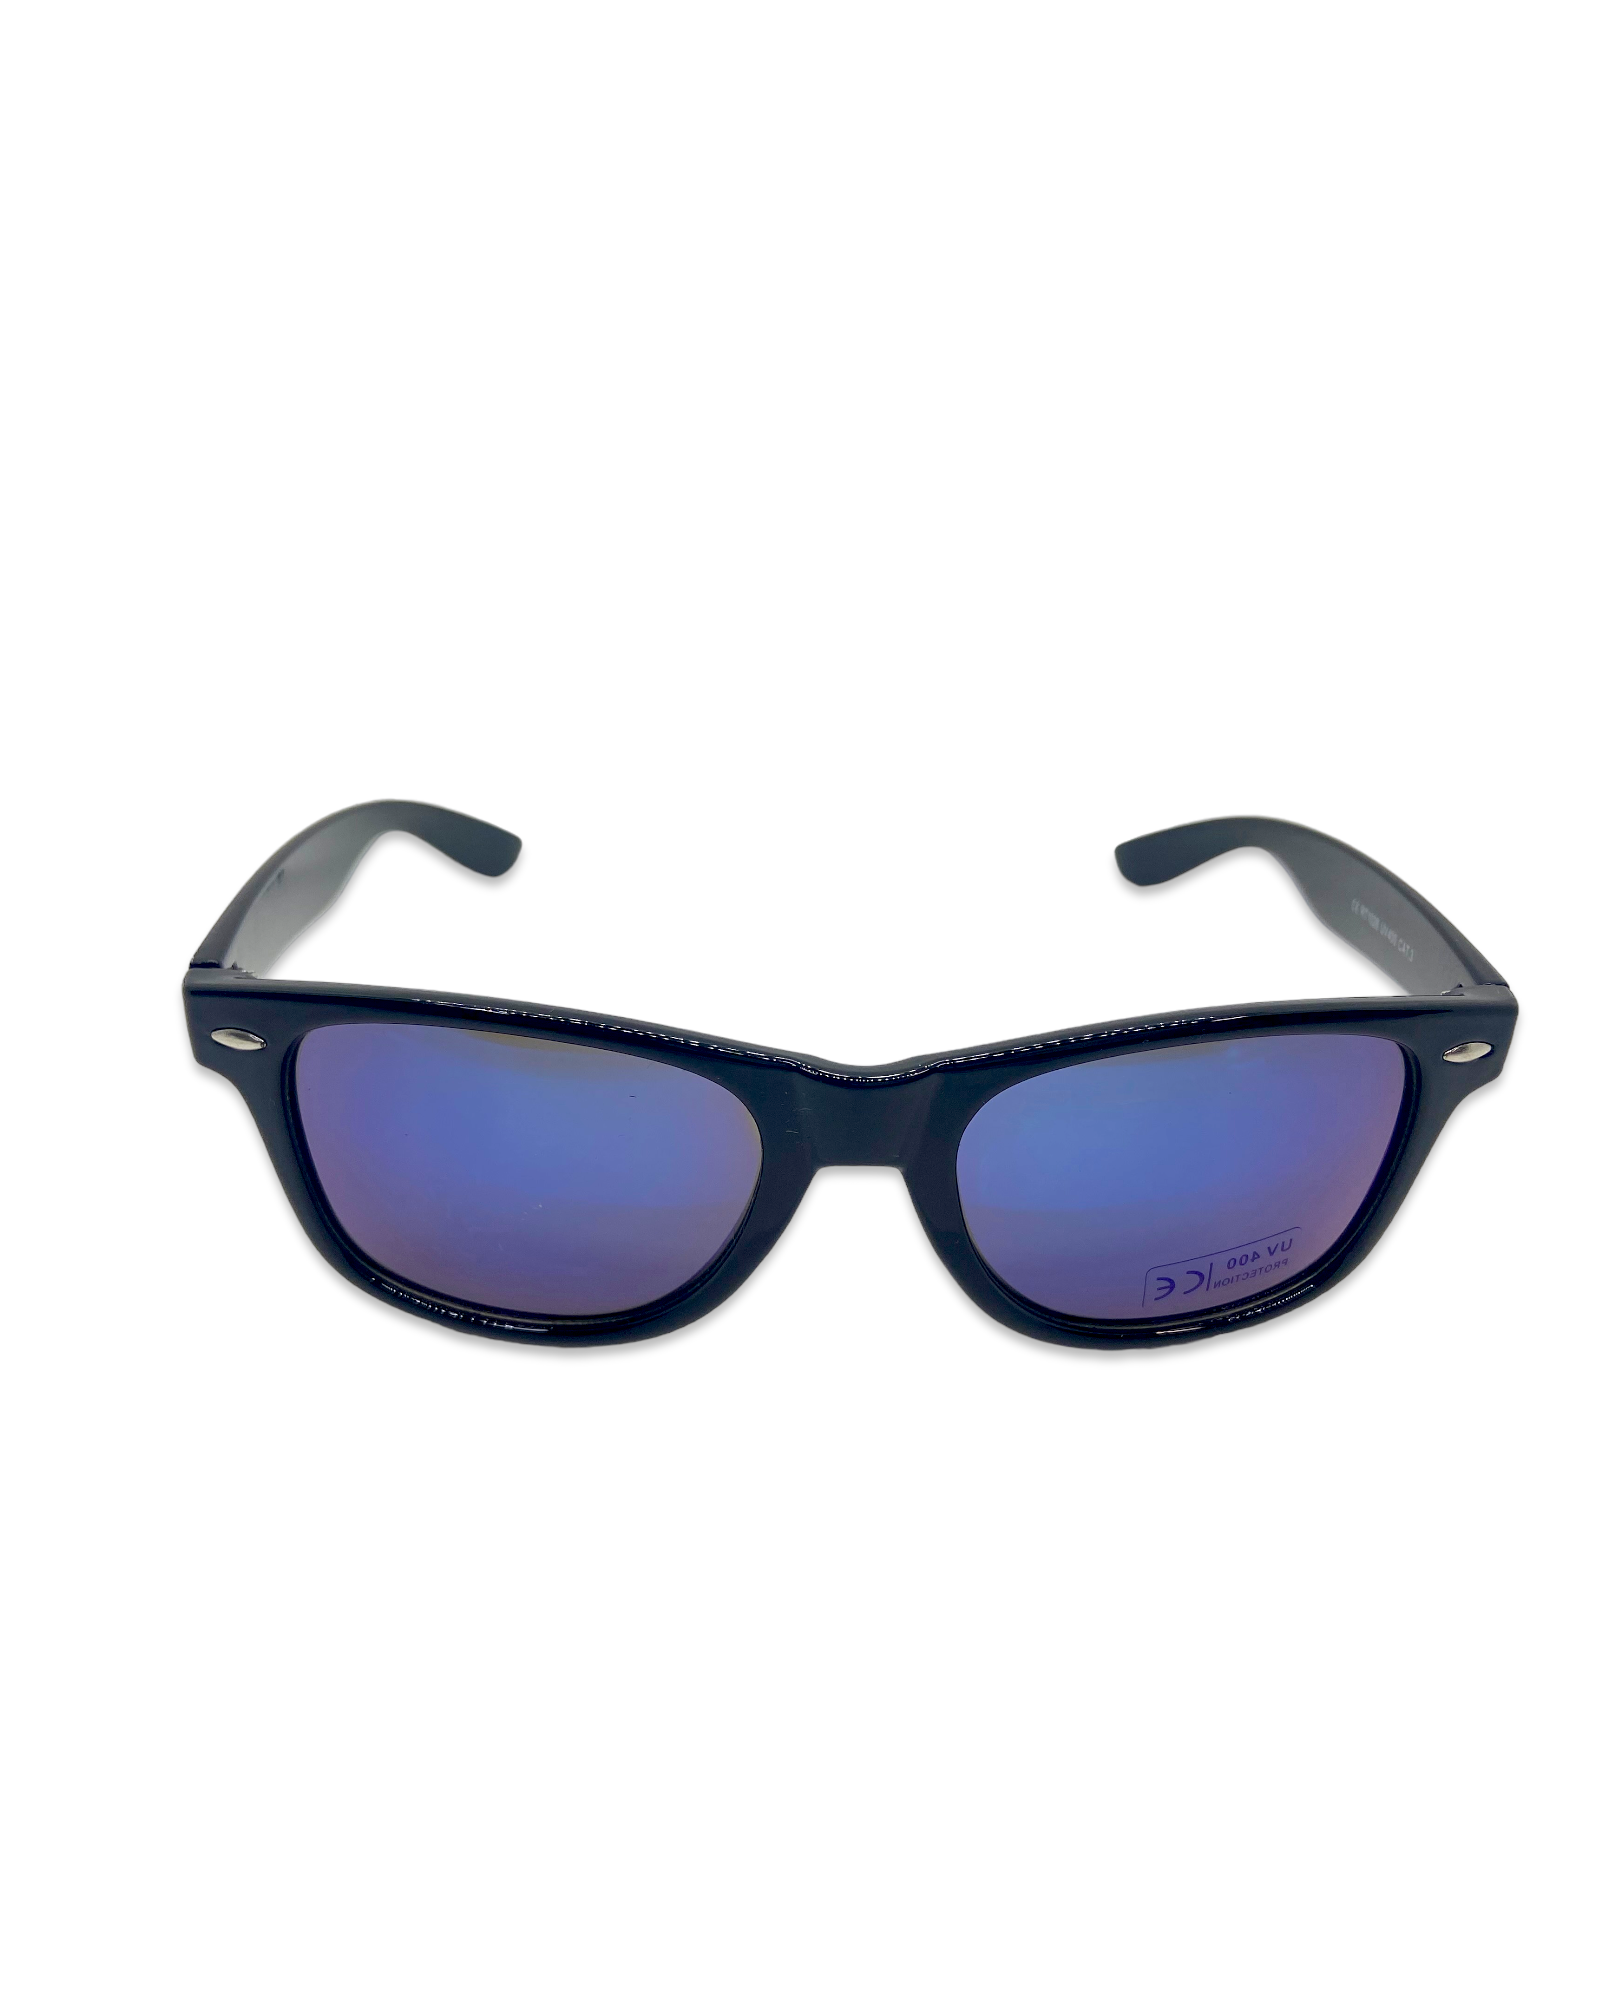 EVOL Sunglasses - Purple